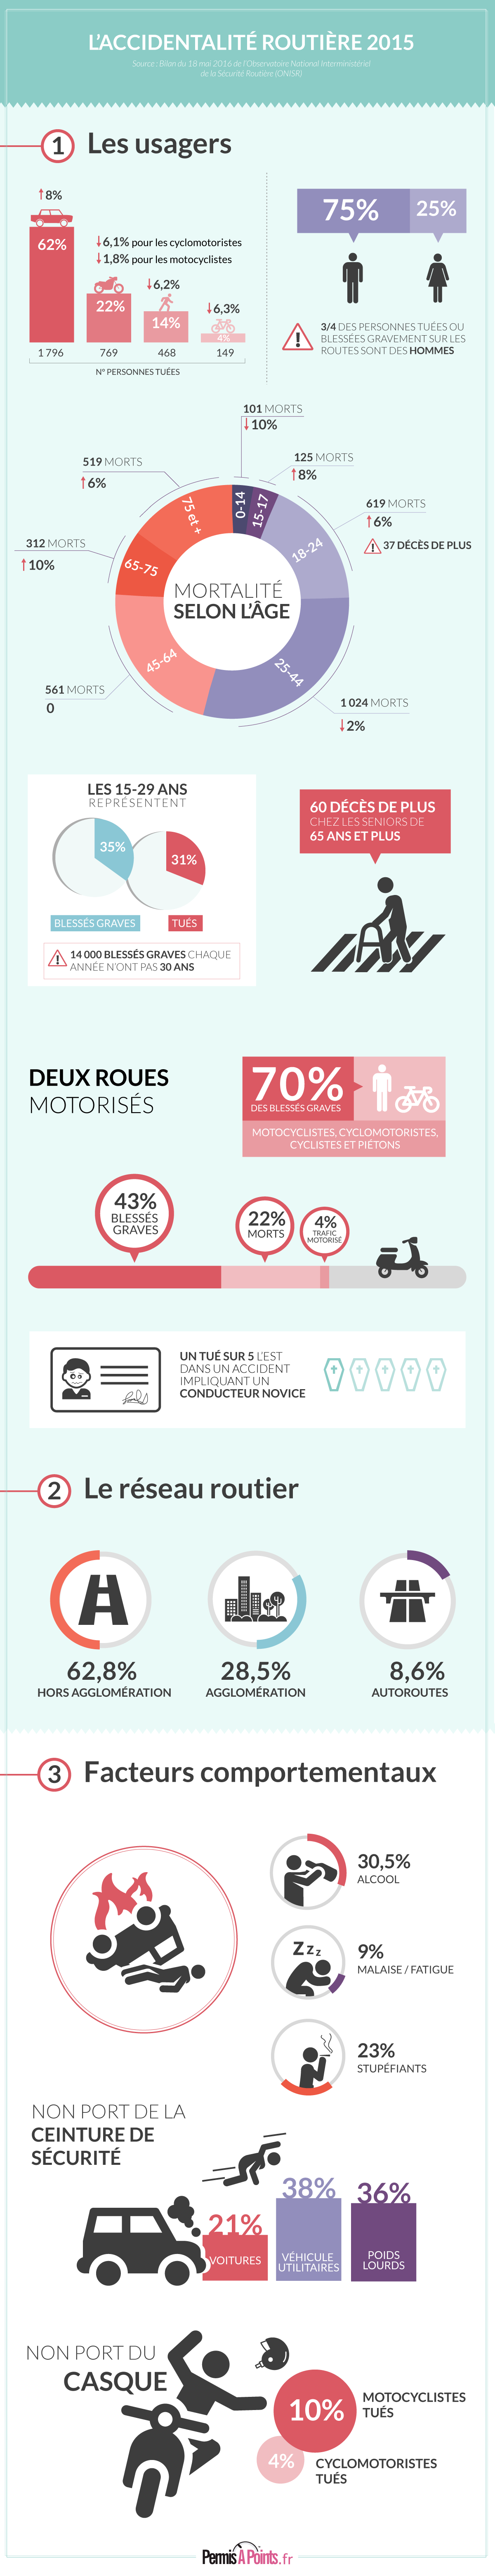 infographie du bilan 2015 de la sécurité routière